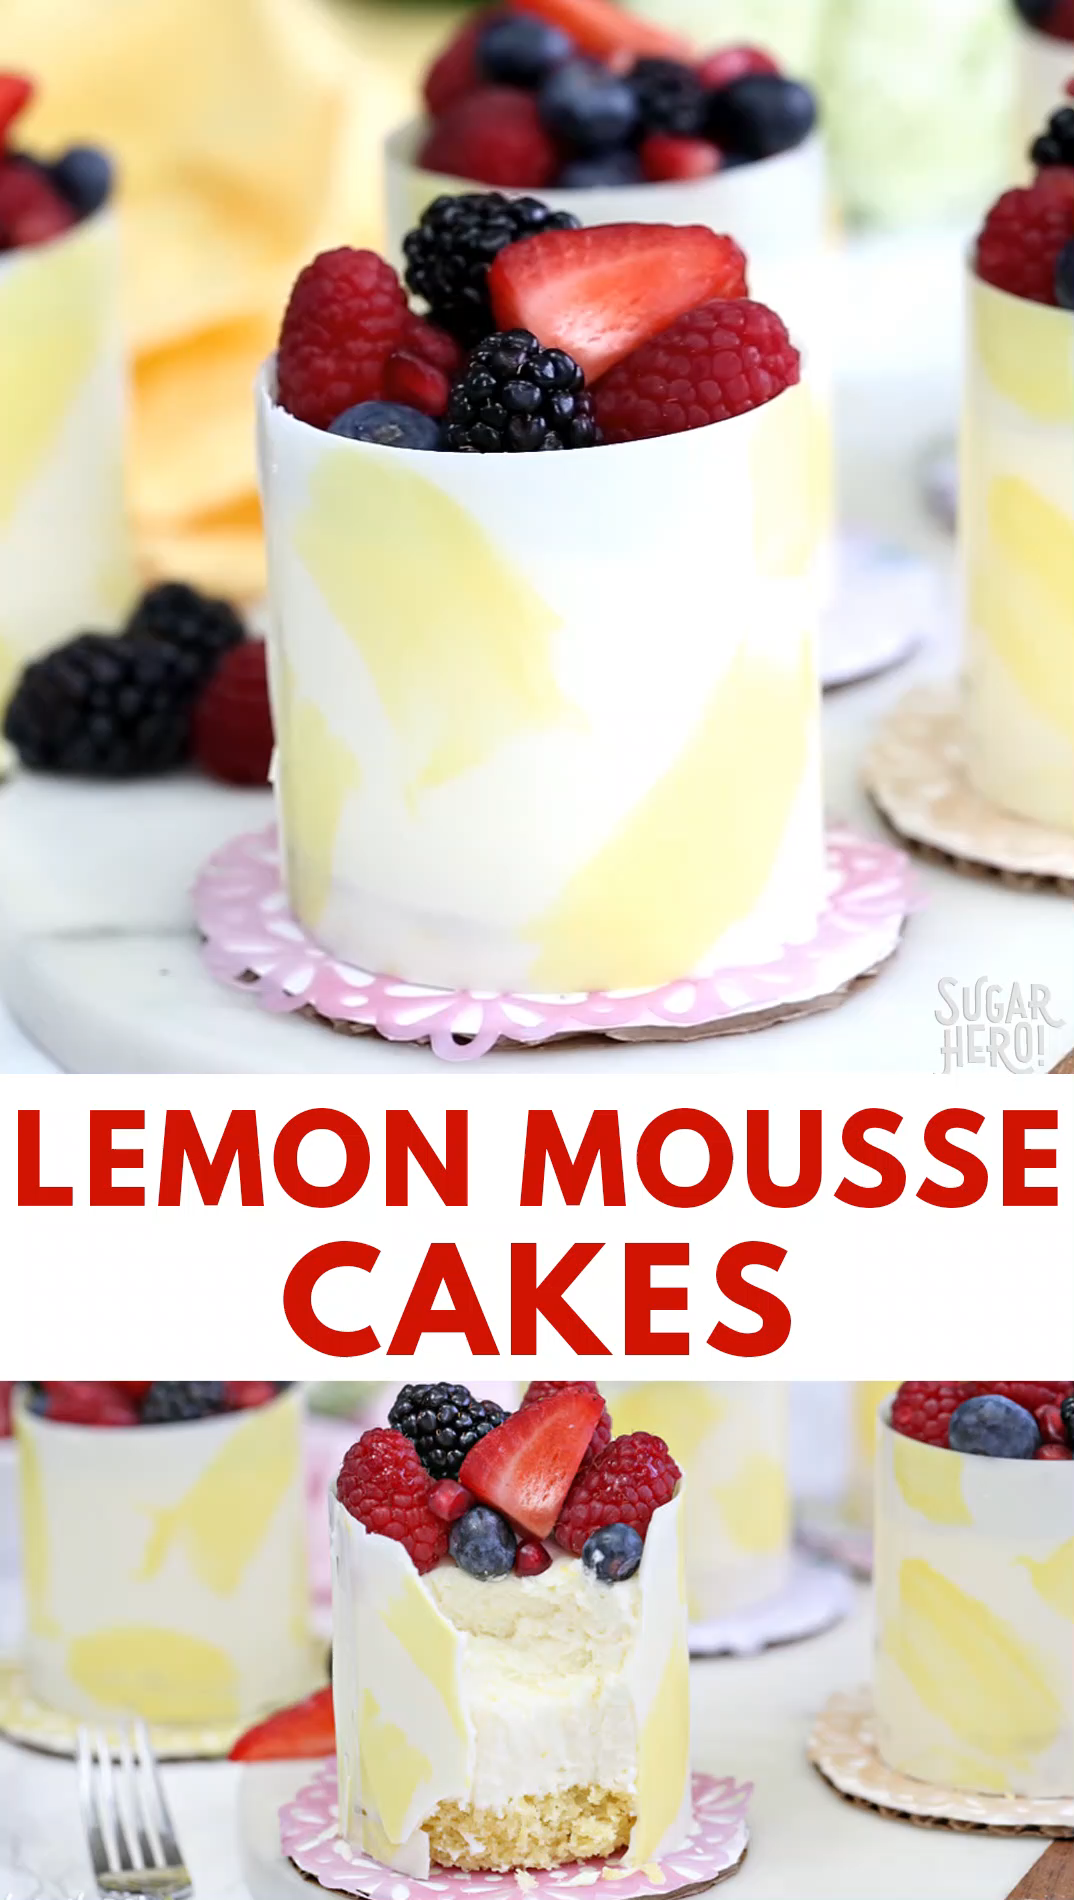 Lemon Mousse Cakes Video -   19 desserts Cake fruit ideas